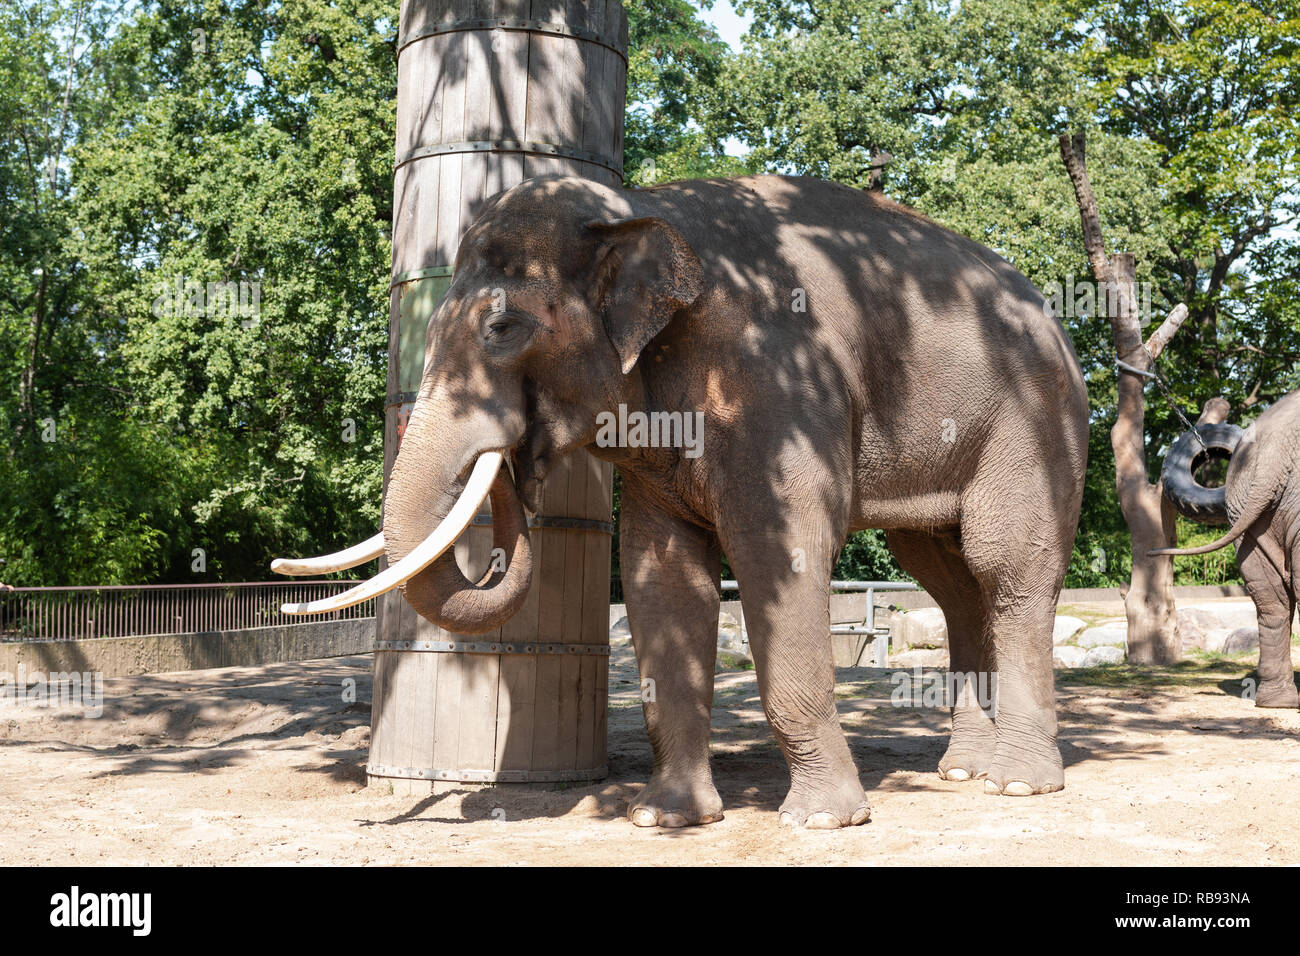 Elephants at Berlin zoo, Germany Stock Photo